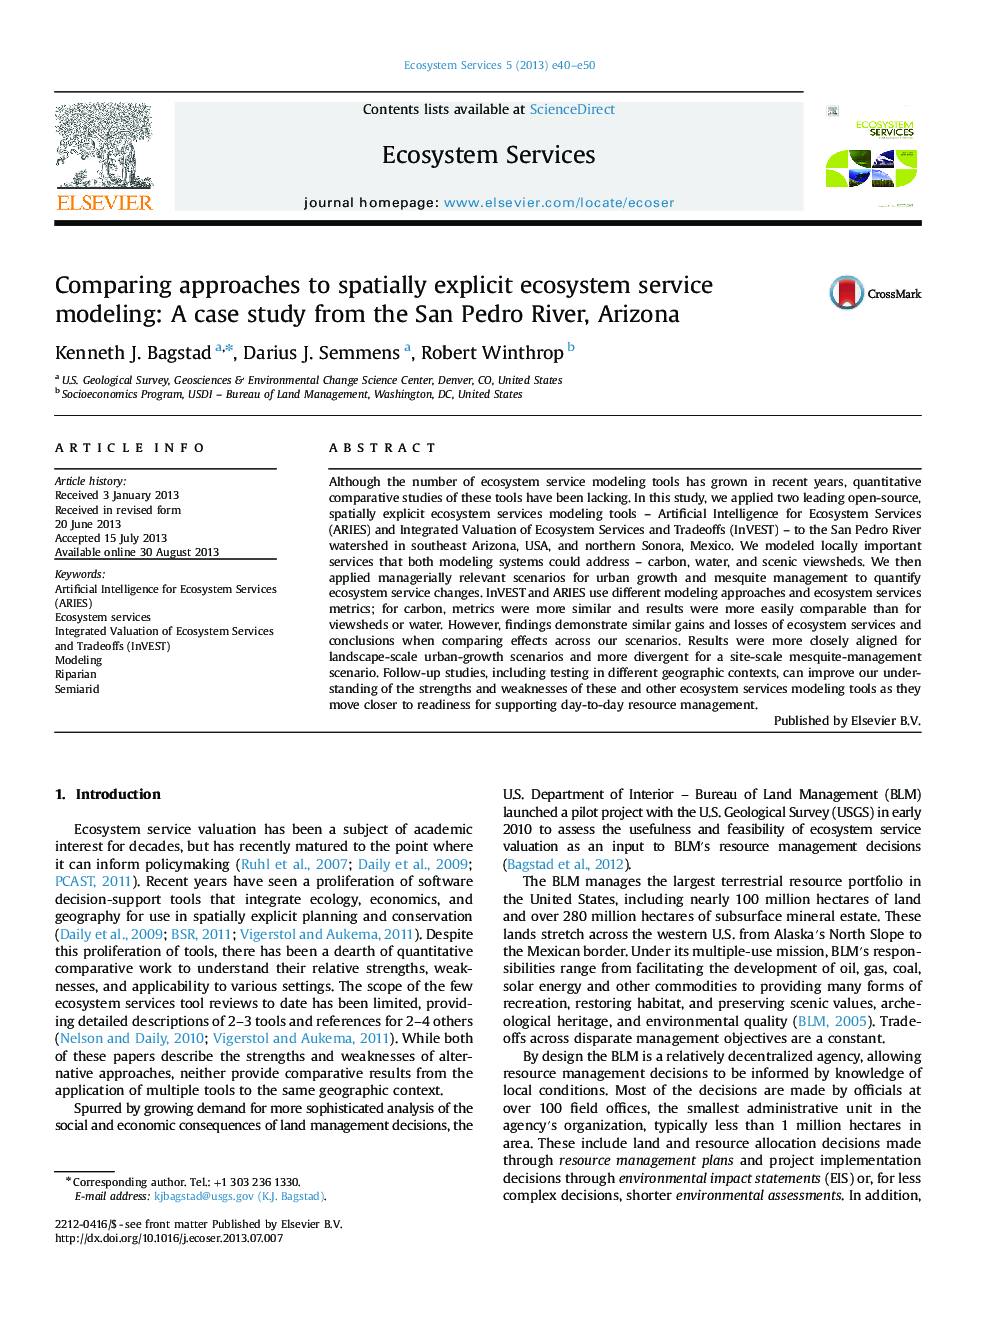 مقایسه رویکردهای مدل سازی خدمات اکوسیستمی صریح صوری: یک مطالعه موردی از سن پدرو رود آریزونا 